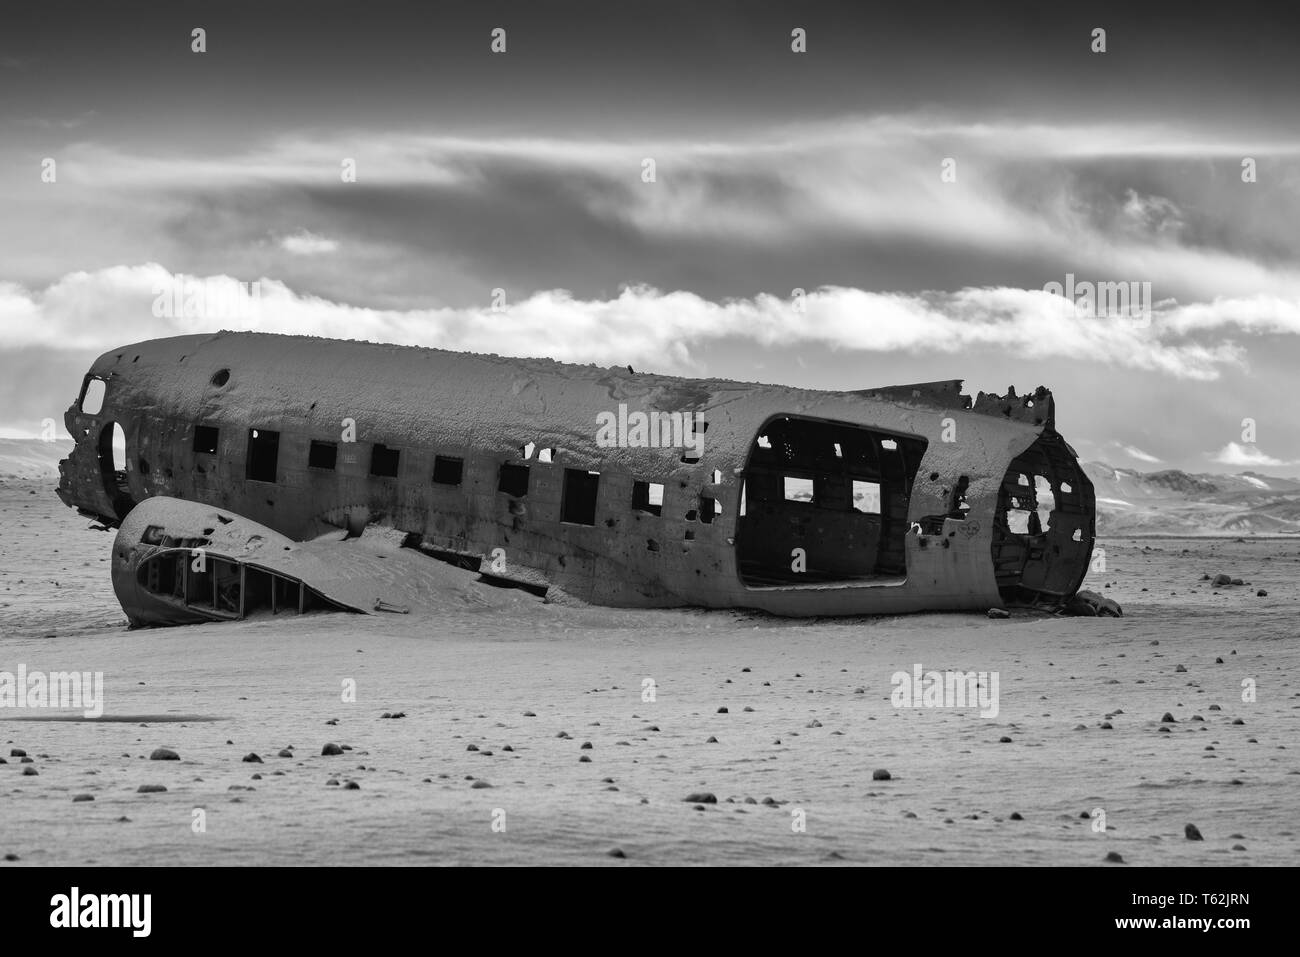 VIK, ISLAND - 15. FEBRUAR 2019: Wrack des abgestürzten DC3 Flugzeug, von Schnee an einem Wintertag im Februar 15, 2019 in Vik, Island Stockfoto